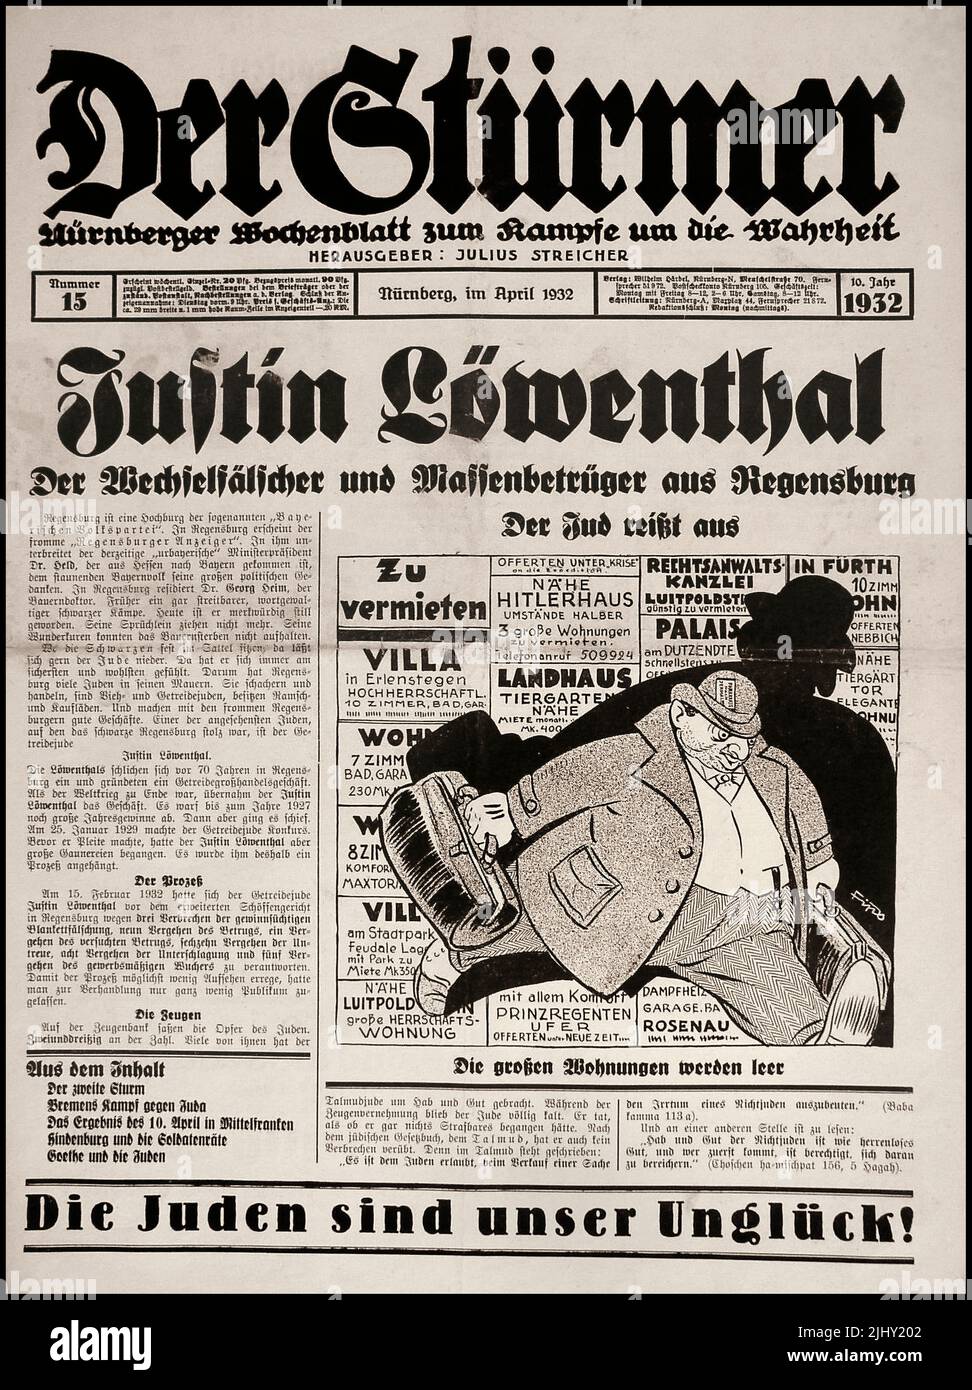 DER STURMER Vintage 1930s El periódico racista antijudío nazi Der Stürmer (literalmente “El Stormer” o más exactamente, “El atacante”) fue un periódico semanal nazi publicado desde 1923 hasta el final de la Segunda Guerra Mundial en 1945. Era una parte importante de la maquinaria de propaganda nazi y era vehementemente antisemita. 'Der Stürmer' era más conocido por sus caricaturas antisemitas, que revelaban a los judíos como personajes feos con rasgos faciales exagerados y cuerpos deformados. Fue la contribución del dueño Julius Streicher a la aniquilación de los judíos europeos. Fue ejecutado por crímenes de guerra en 1945 Foto de stock